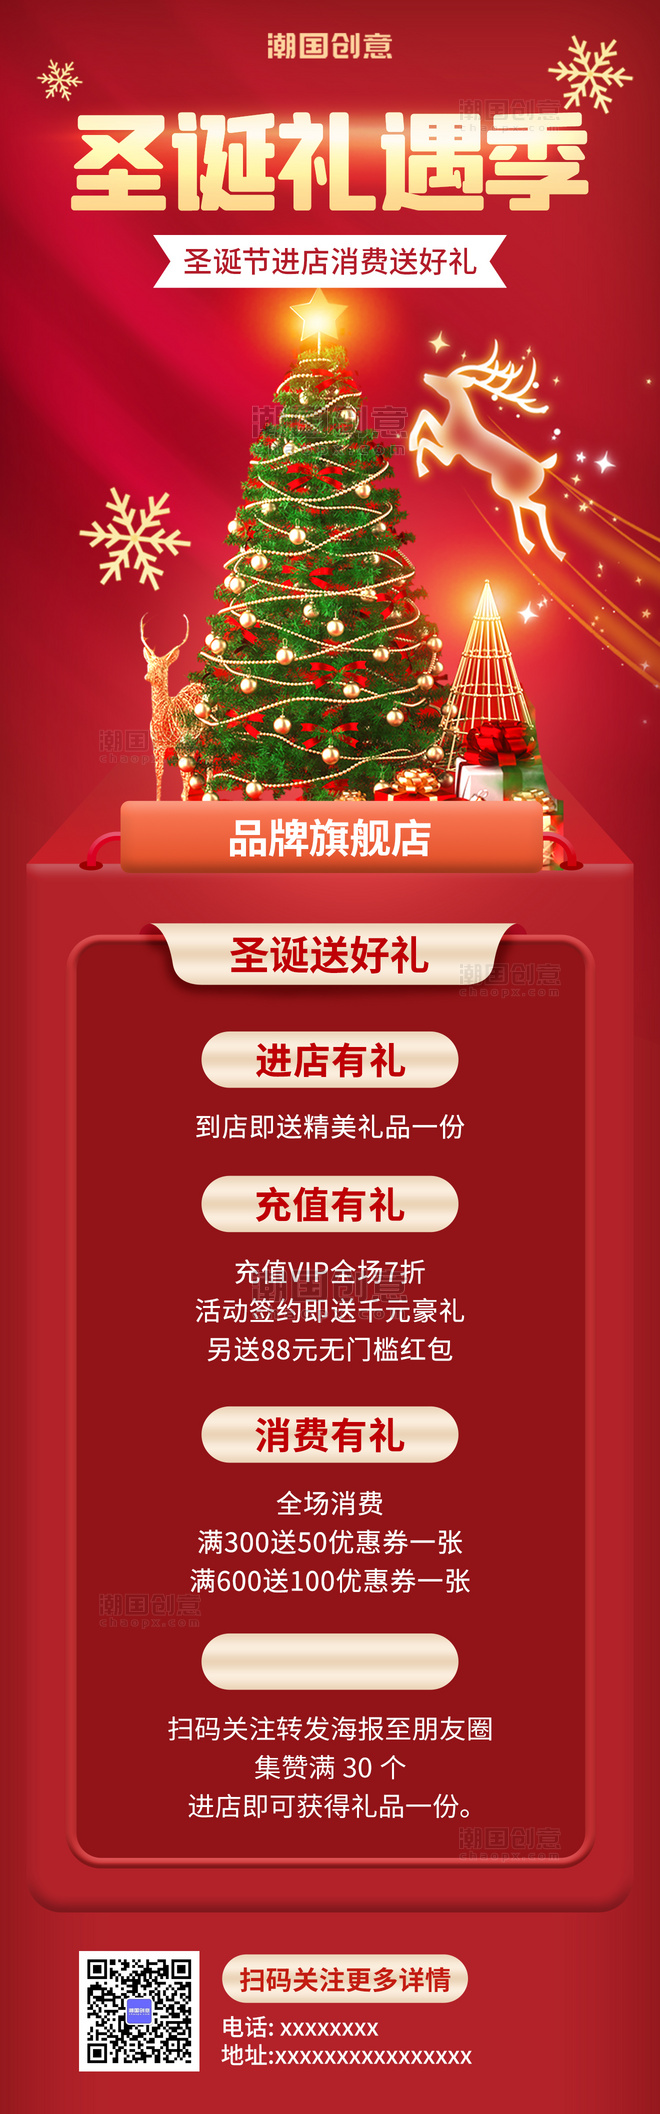 圣诞礼遇季圣诞节活动促销优惠H5红色圣诞树海报